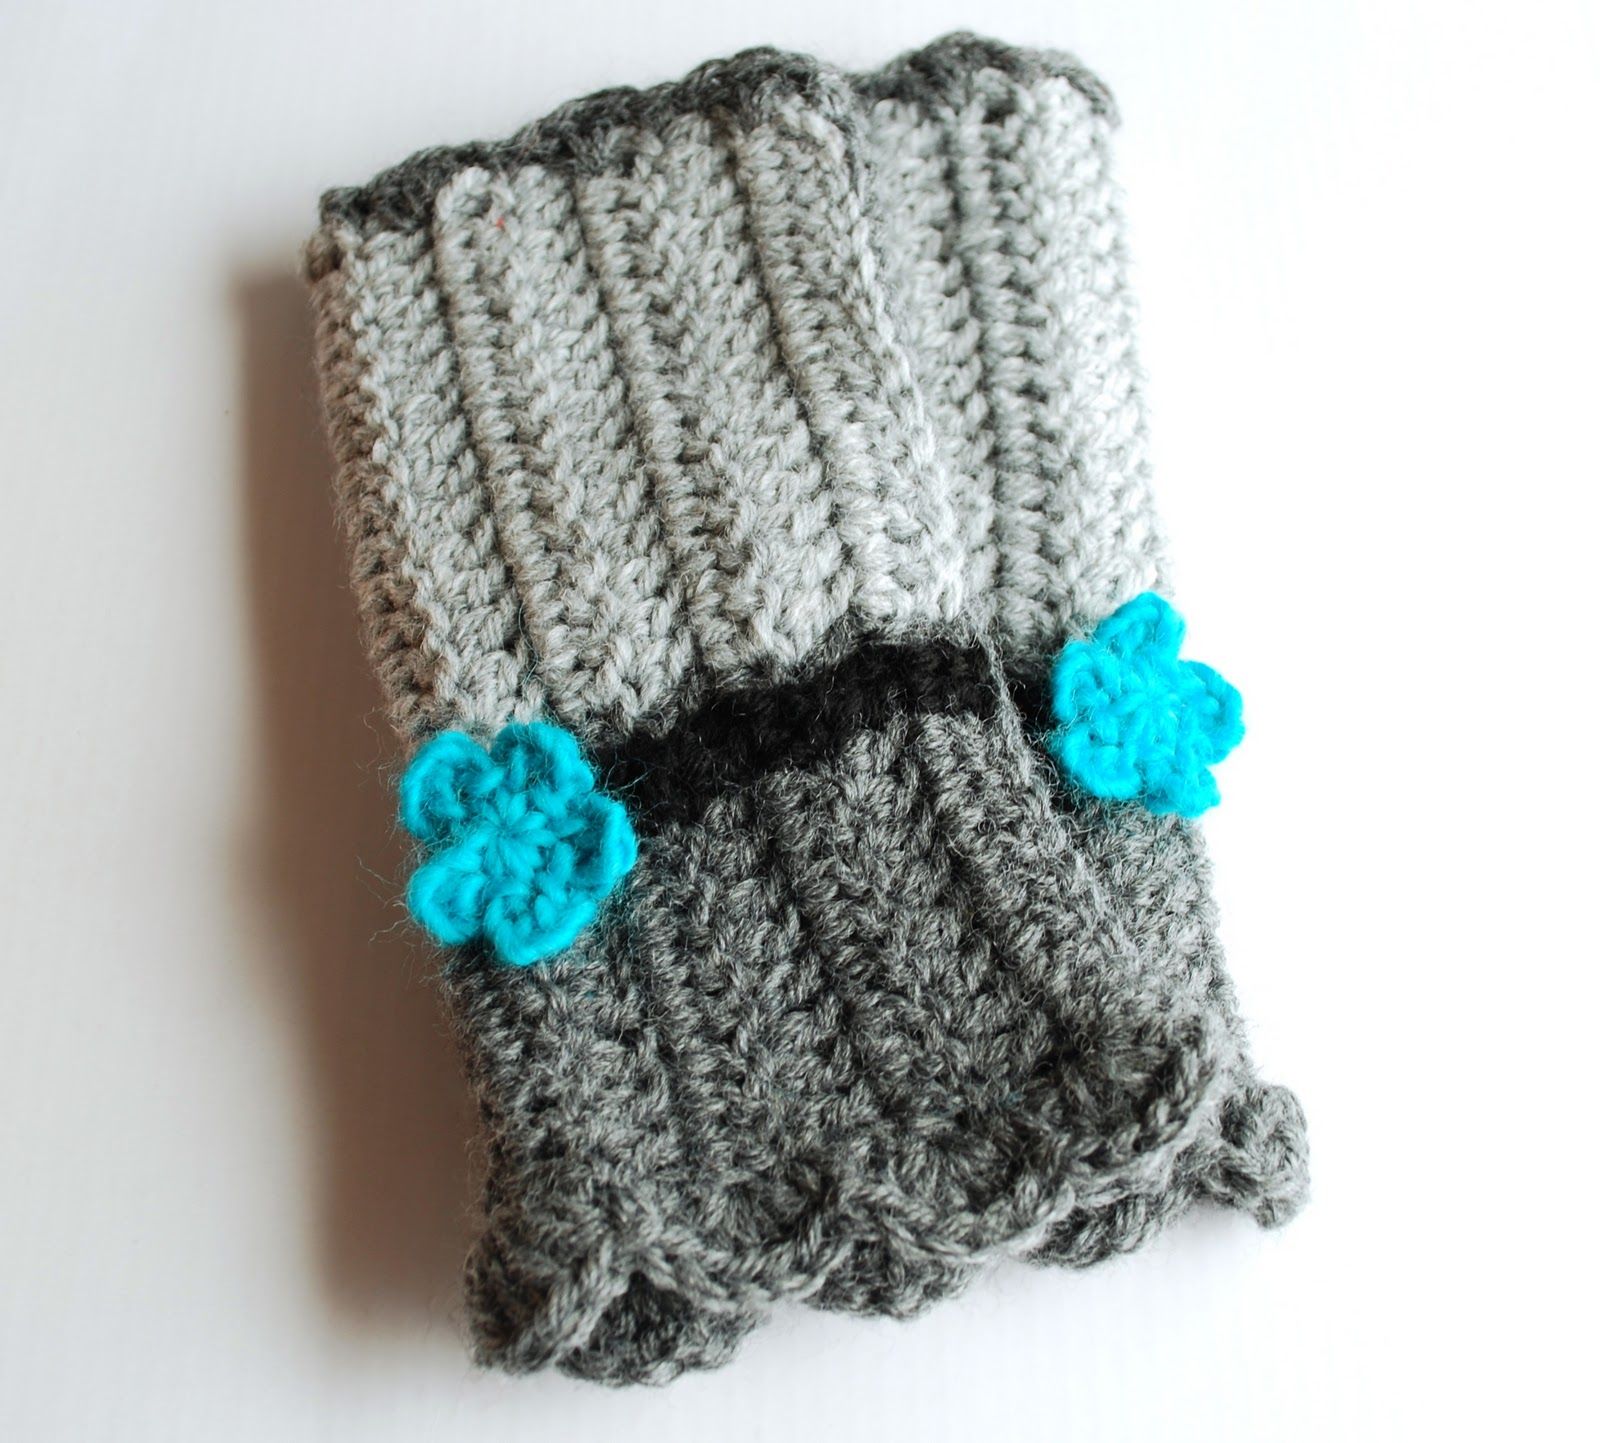 craftydill: pattern : crocheted wrist warmers -   Crocheted wrist warmers